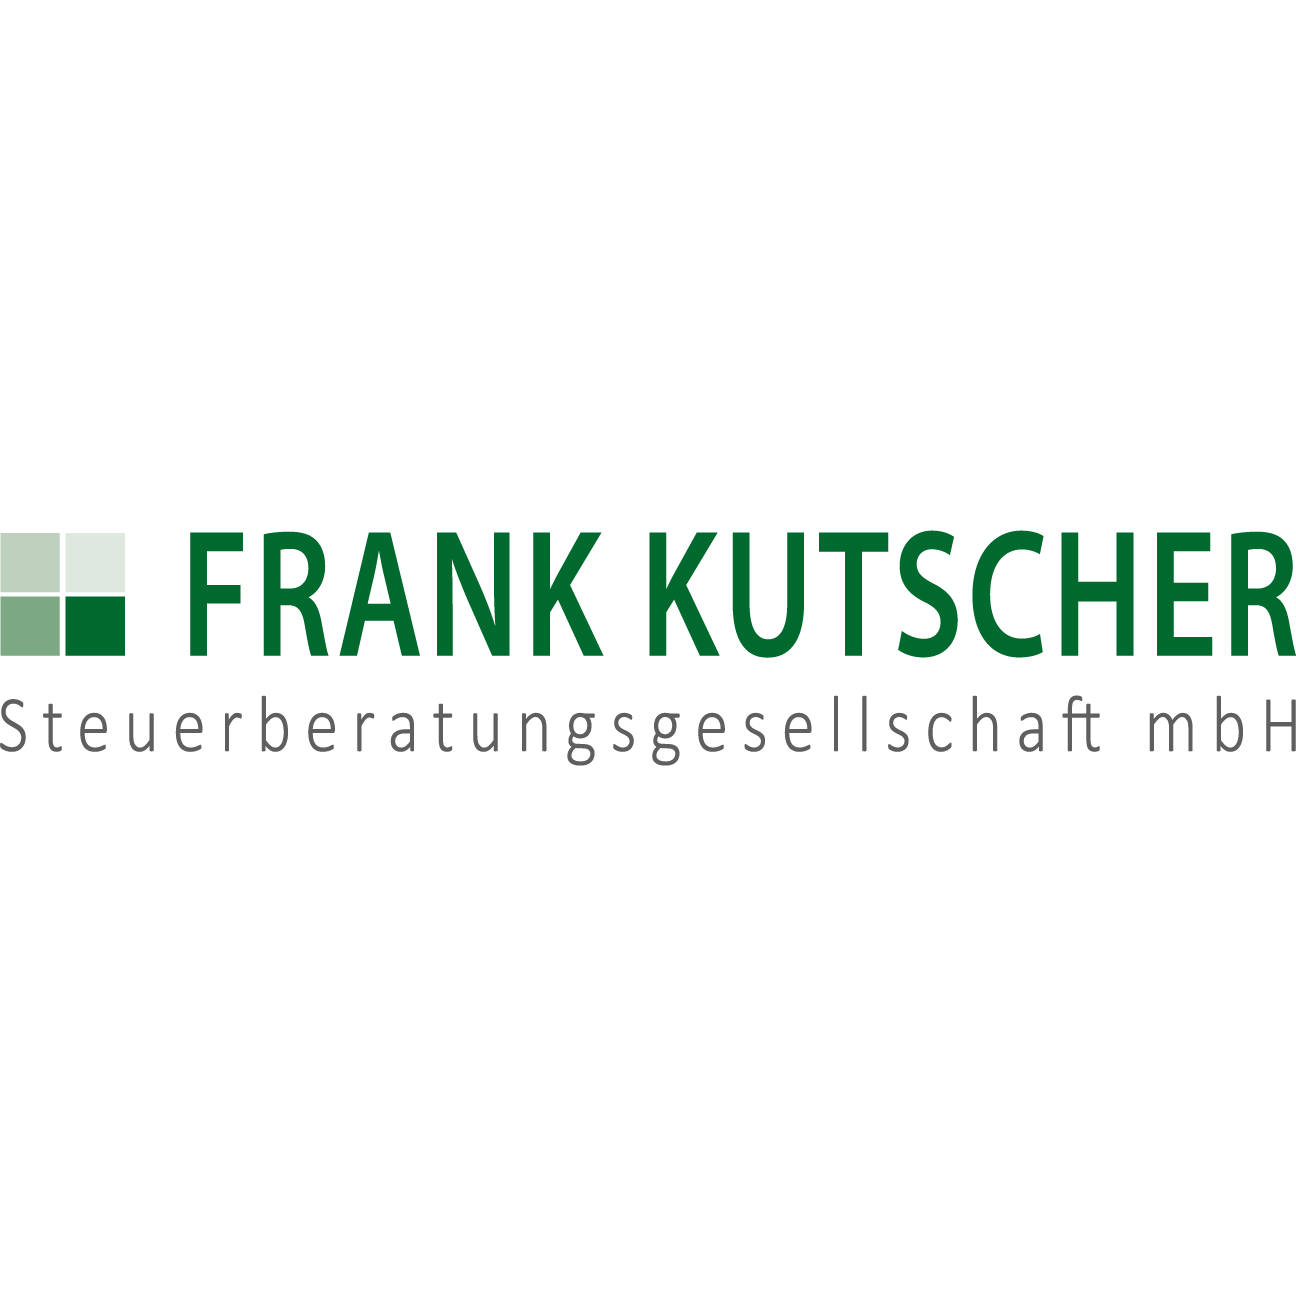 Frank Kutscher, Steuerberatungsgesellschaft mbH in Pößneck - Logo